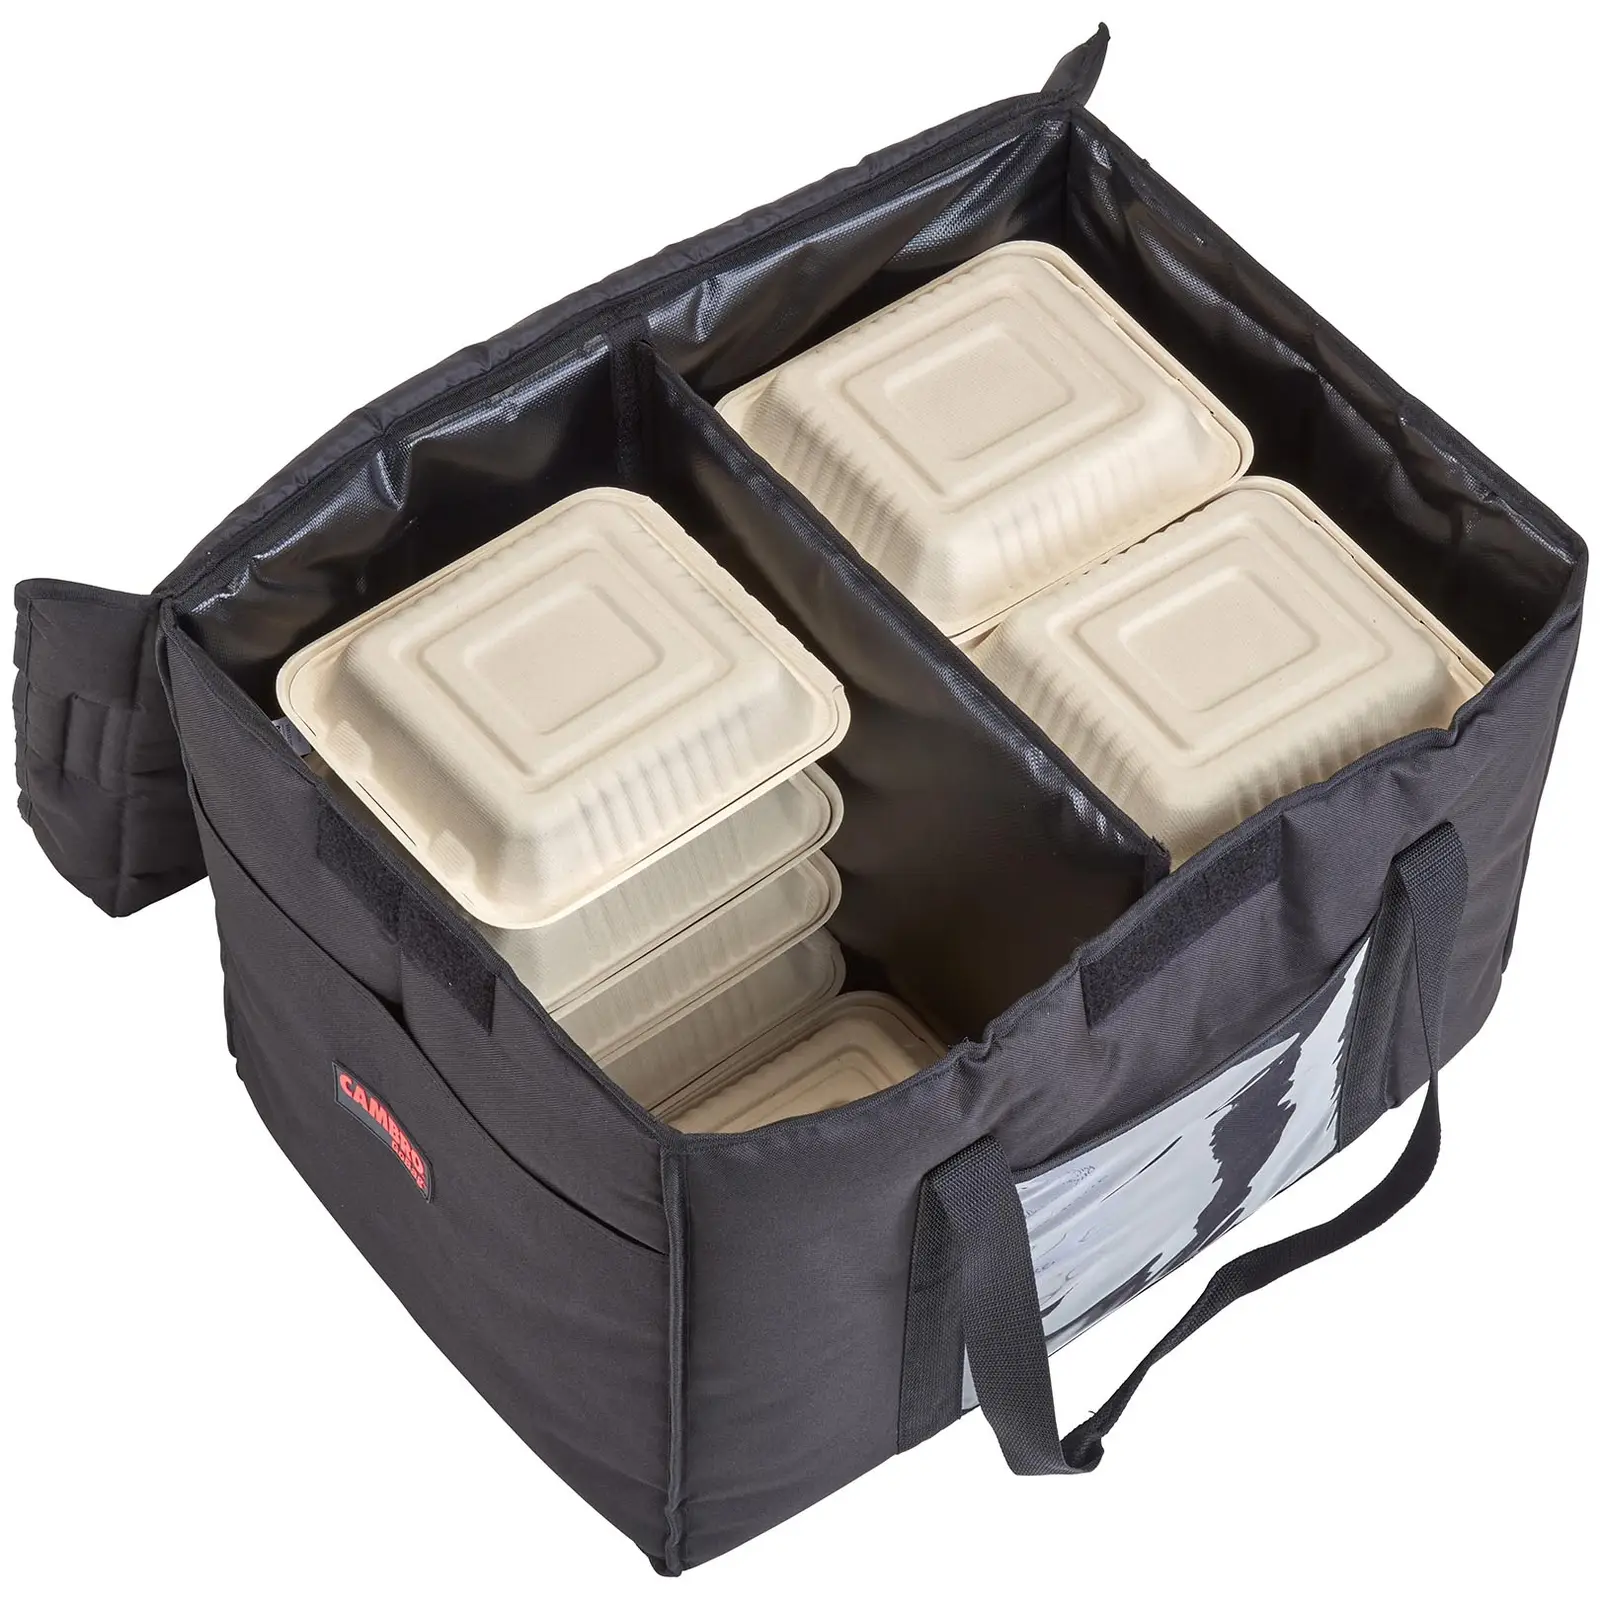 Food Delivery Bag - 53.5 x 35.5 x 35.5 cm - Black - toploader